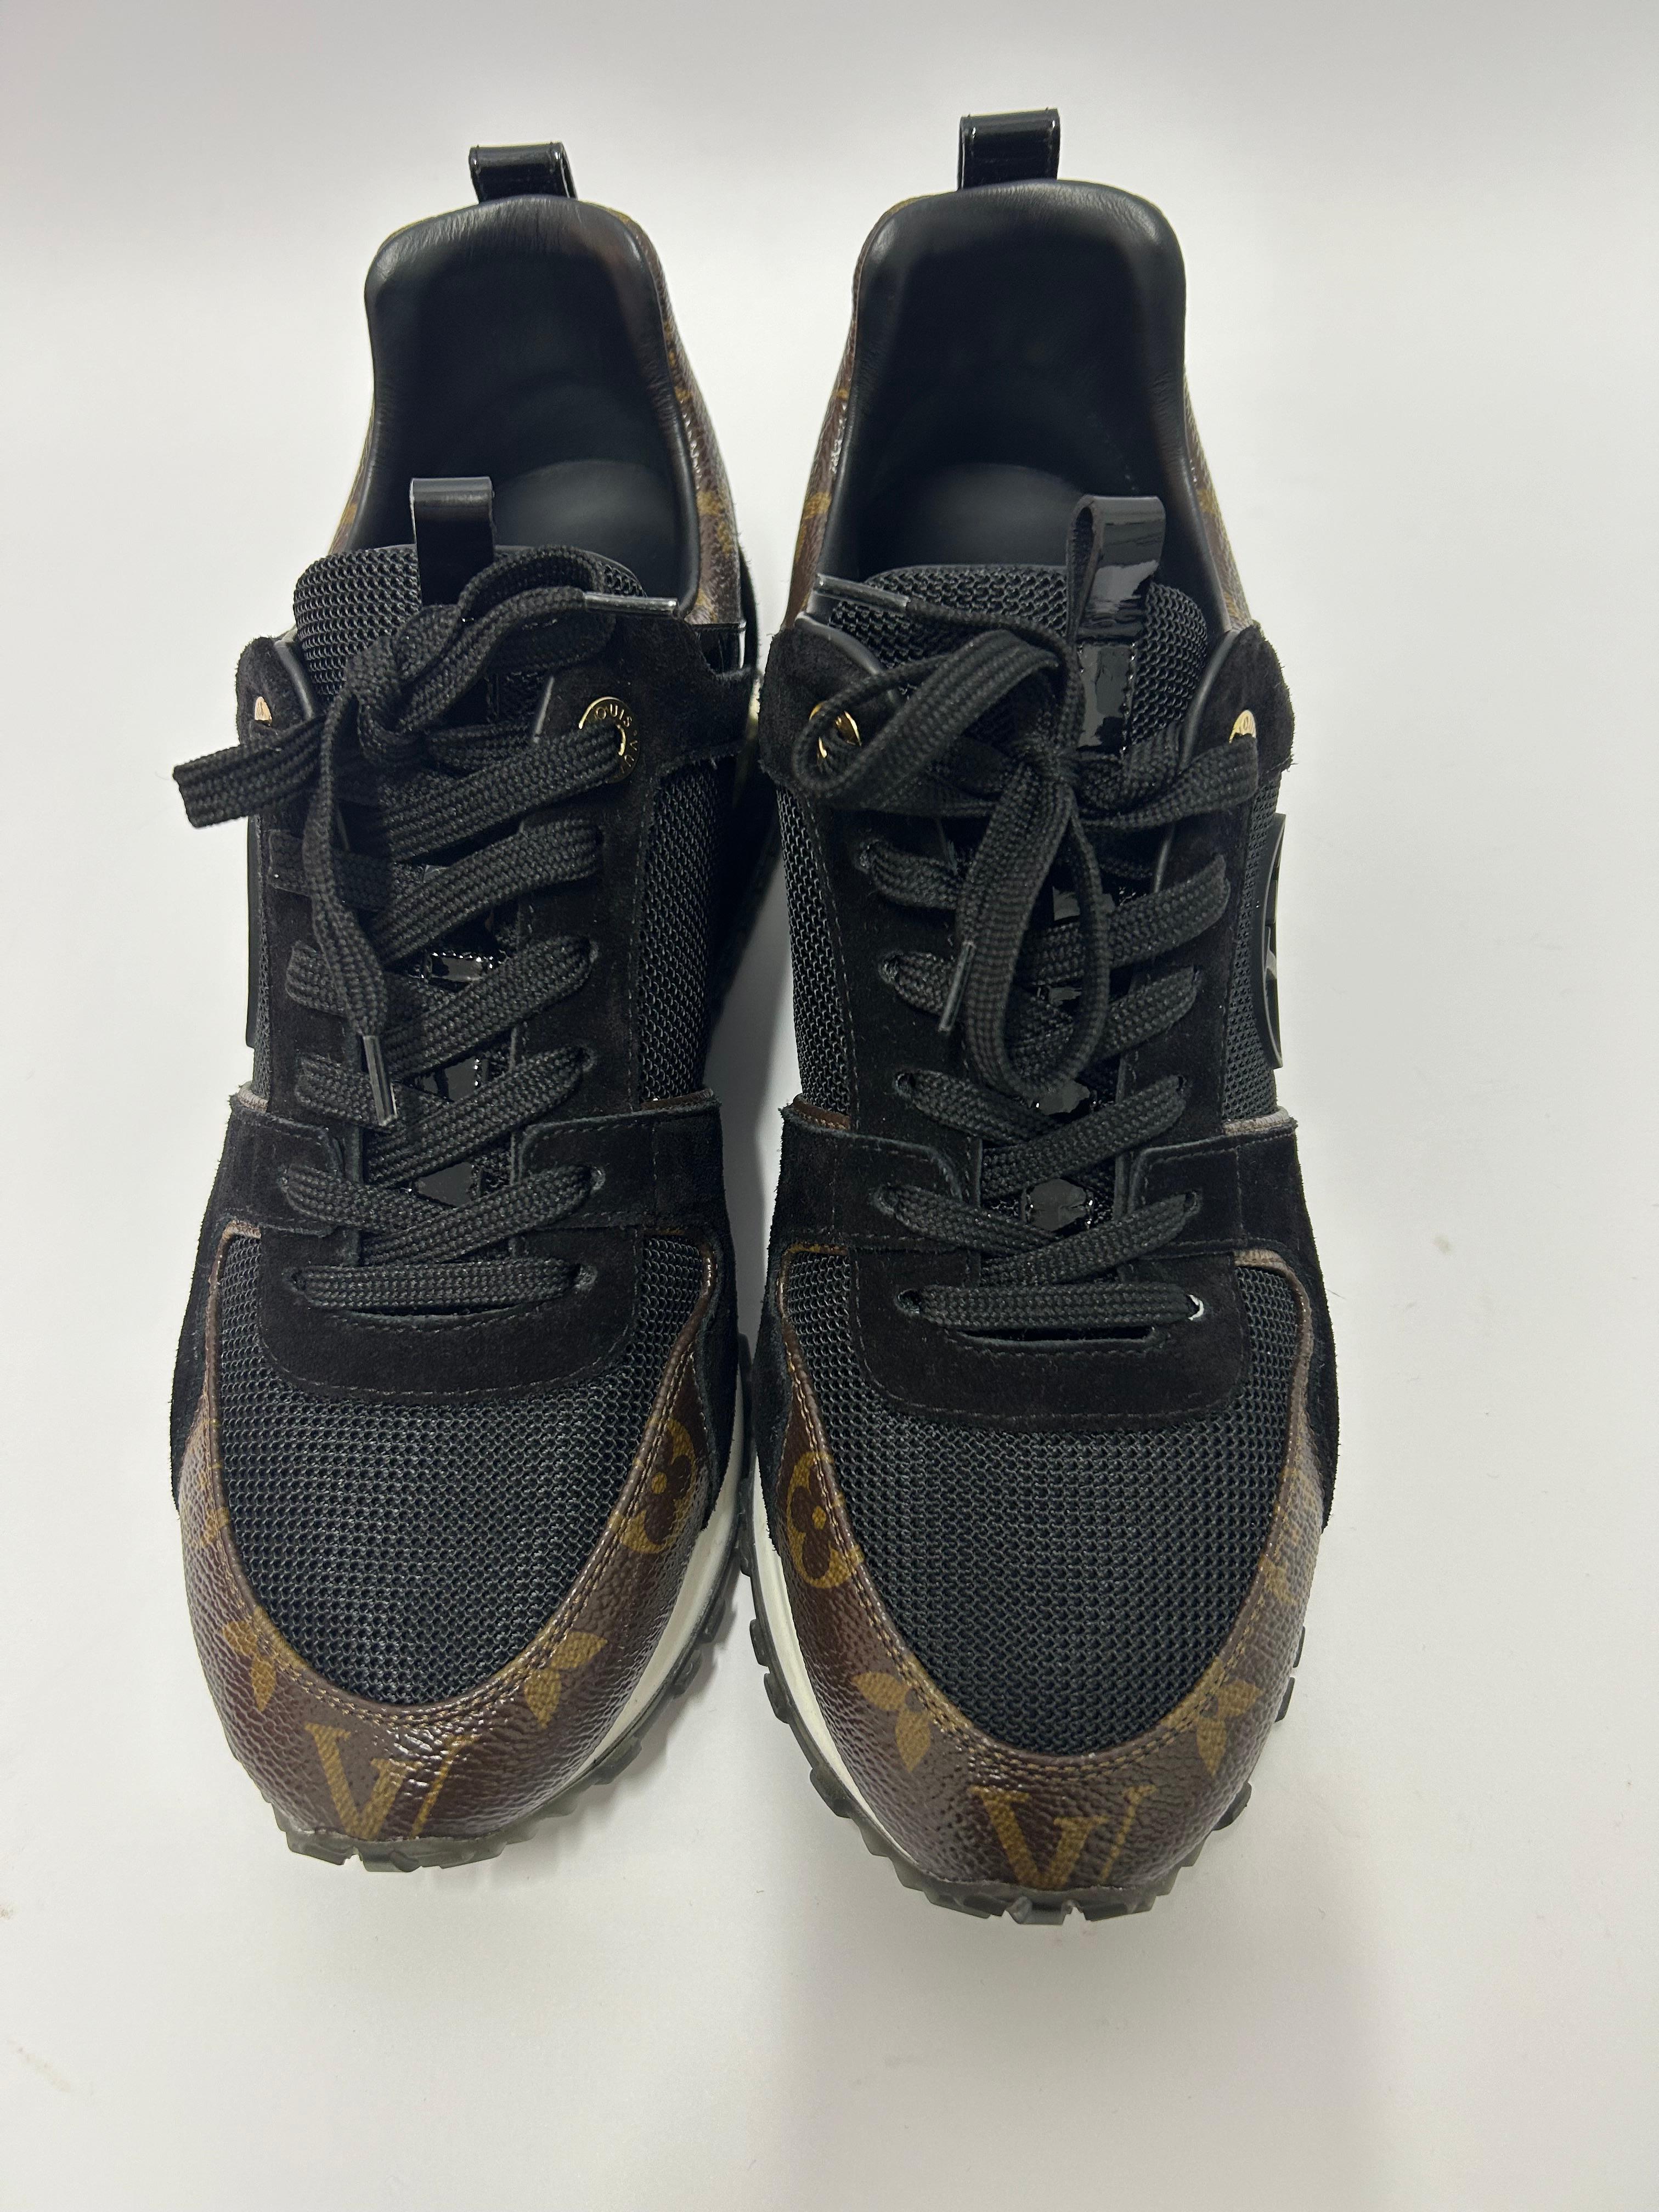 Louis Vuitton Run Away Sneakers Size EU 39 2